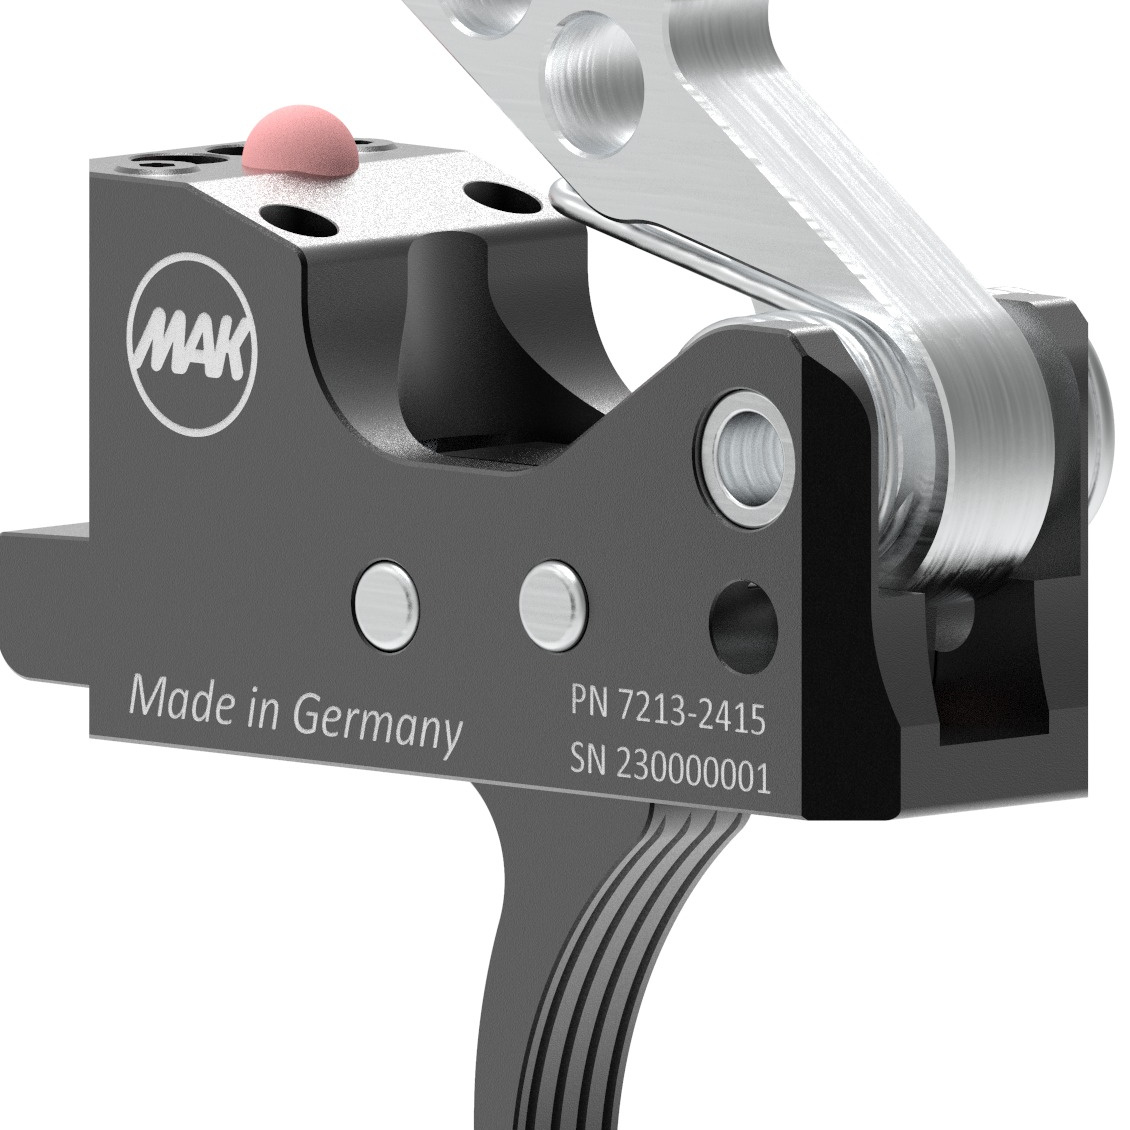 MAKtrigger DRS Drop-In für AR-10 / AR-15 Plattformen, gebogen